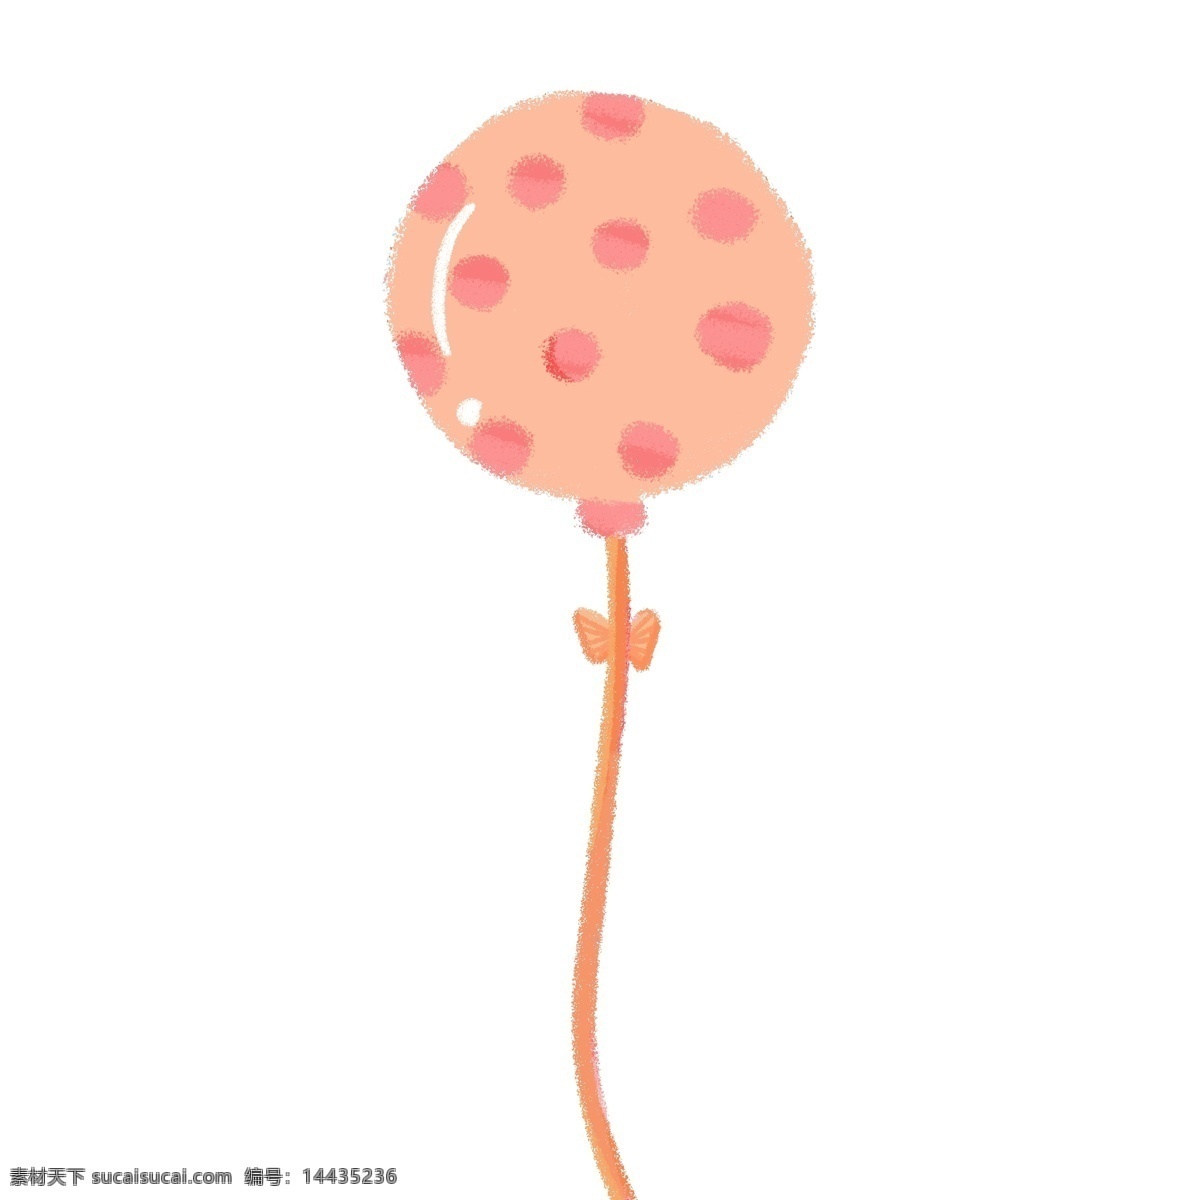 橘色斑点气球 橘色 斑点 气球 美丽 孩子 梦幻 六一